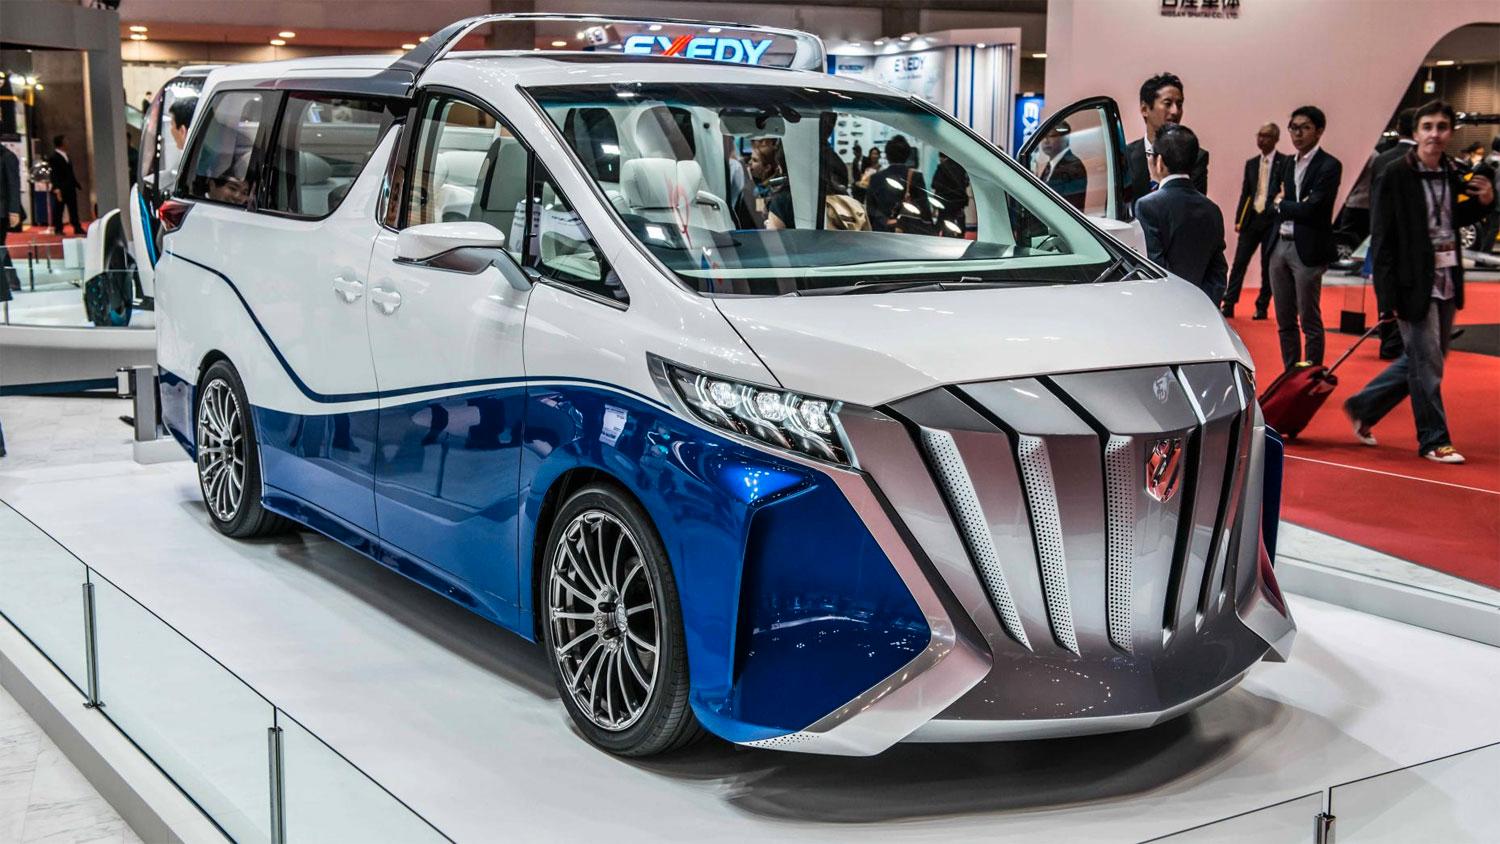 Karossbyggaren Toyota Auto Body är specialiserade på ”udda” design. Deras Alphard Hercule Concept är en minibuss-cabriolet som verkligen sticker ut.